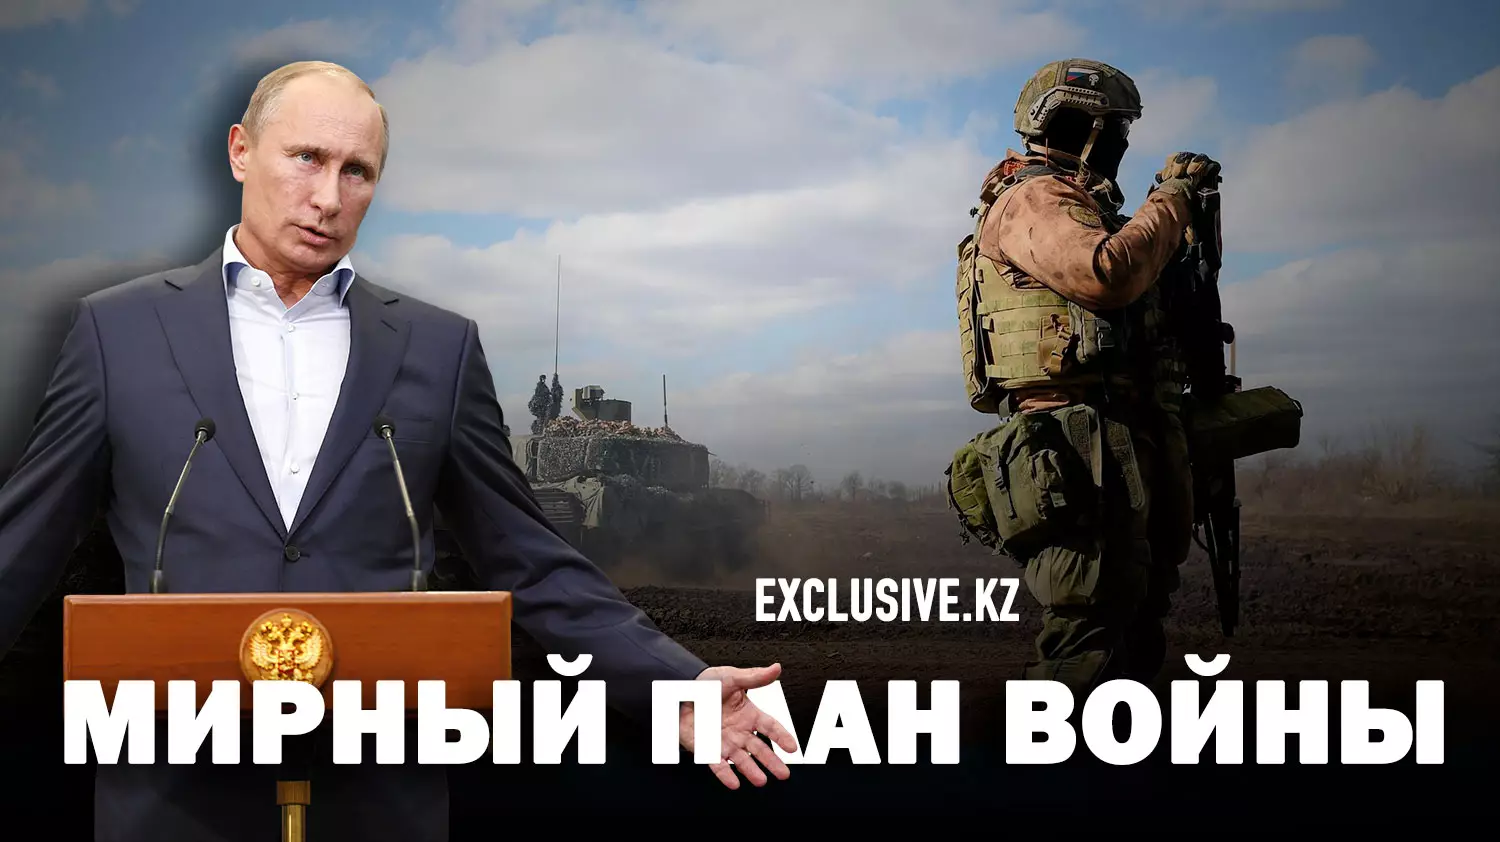 Что значит предложение Путина